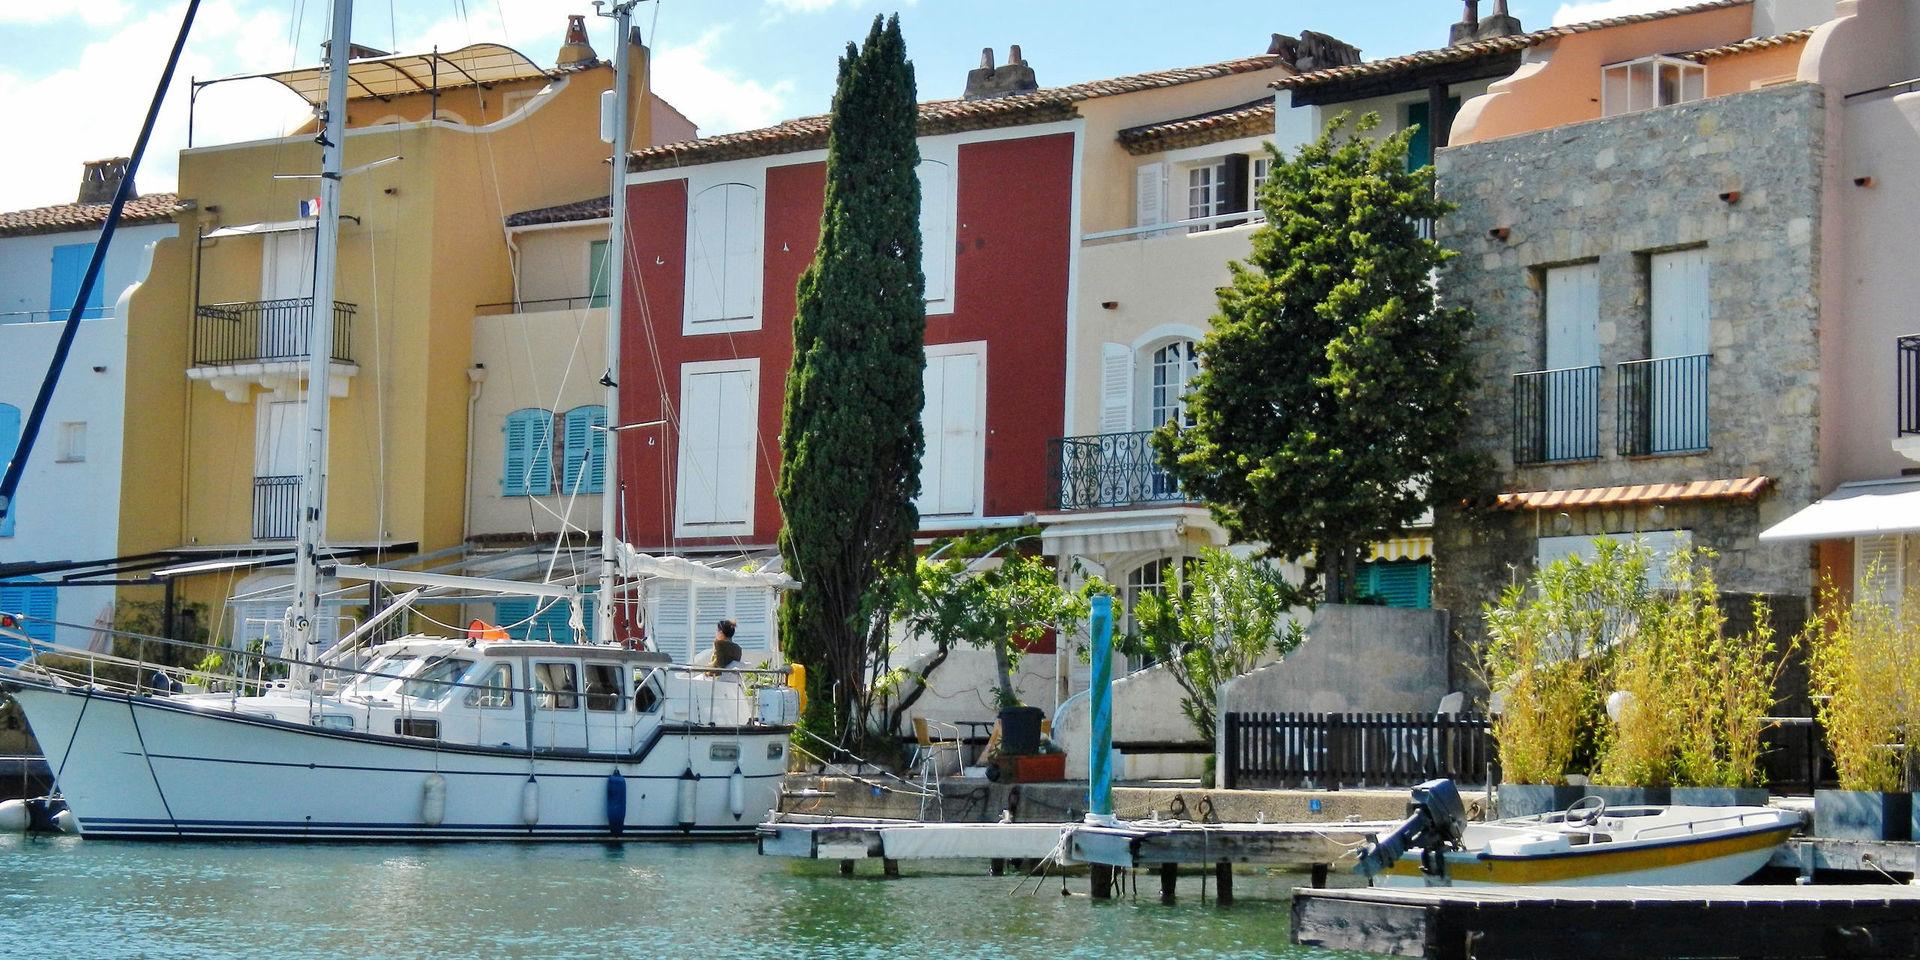 Port Grmiaud i St Tropez, som skribenten ser som en förebild för hur det skulle kunna byggas i Halmstad. Bild: Panoramio